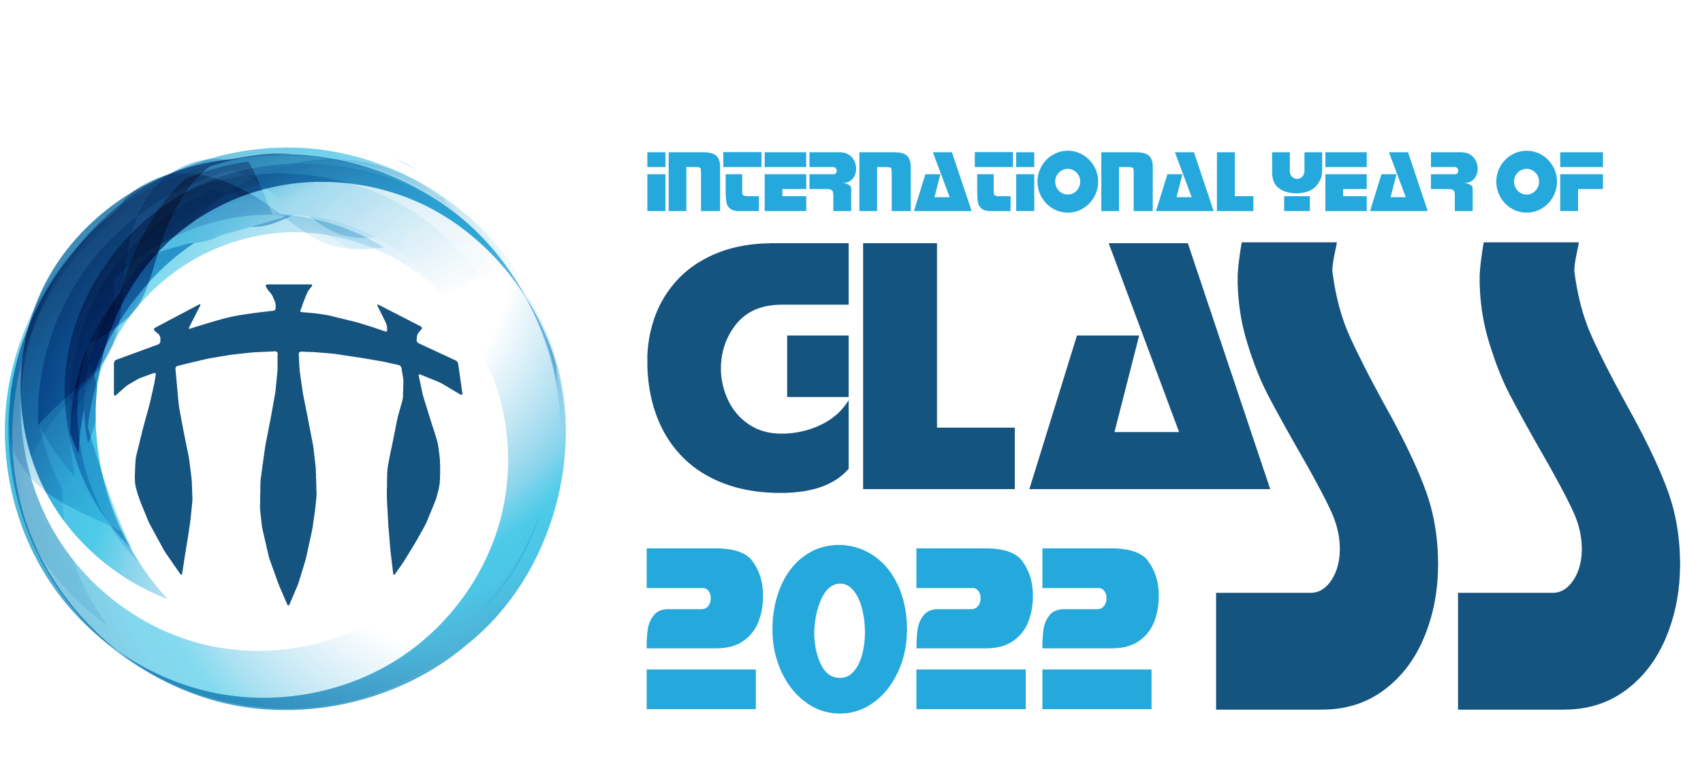 Mezinárodní rok skla 2022 logo